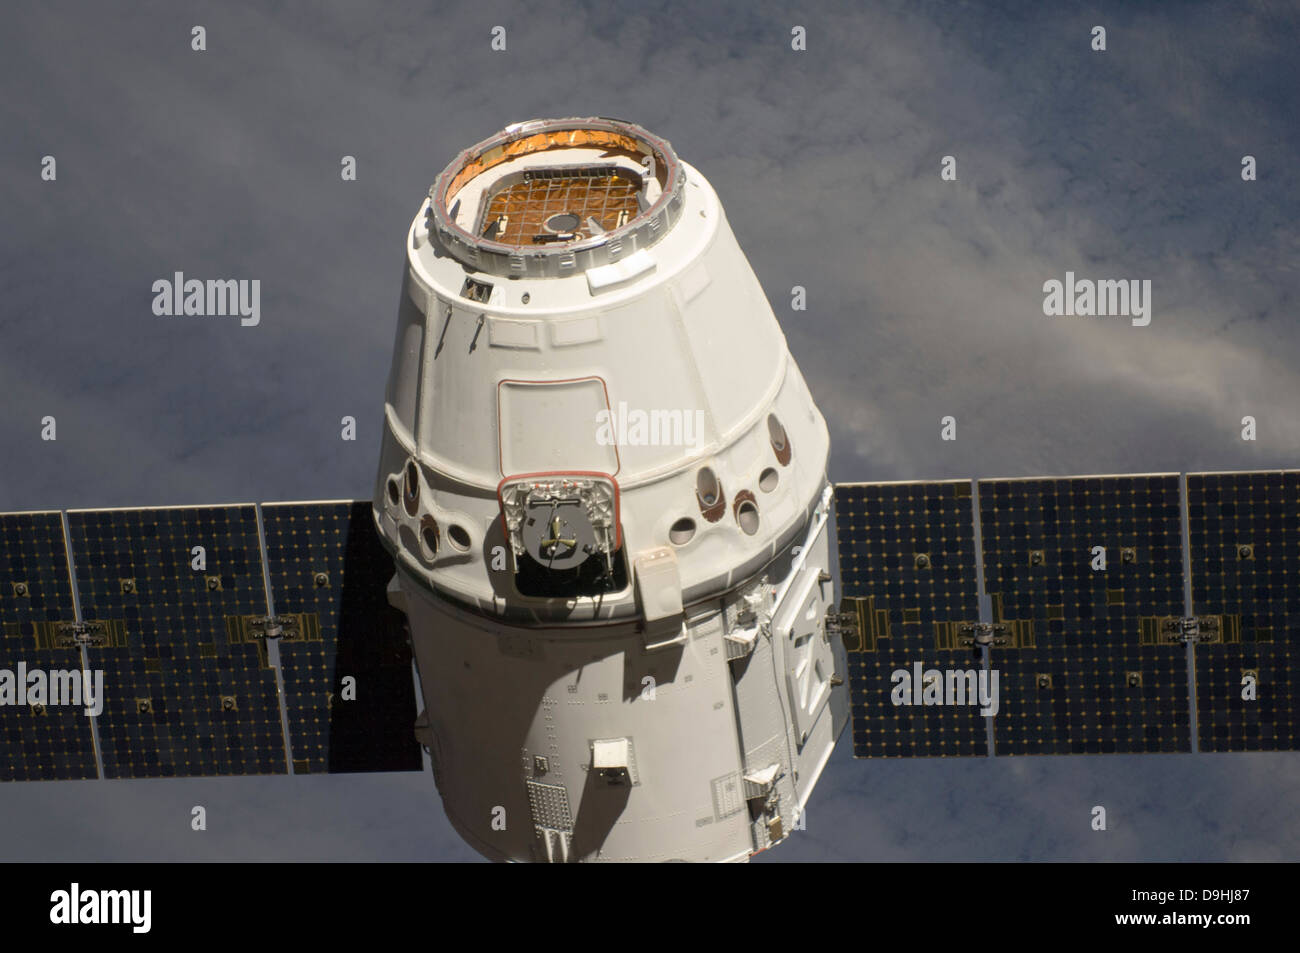 Mayo 25, 2012 - El Dragón SpaceX nave comercial de carga se aproxima a la Estación Espacial Internacional para atraque y tenazas. Foto de stock